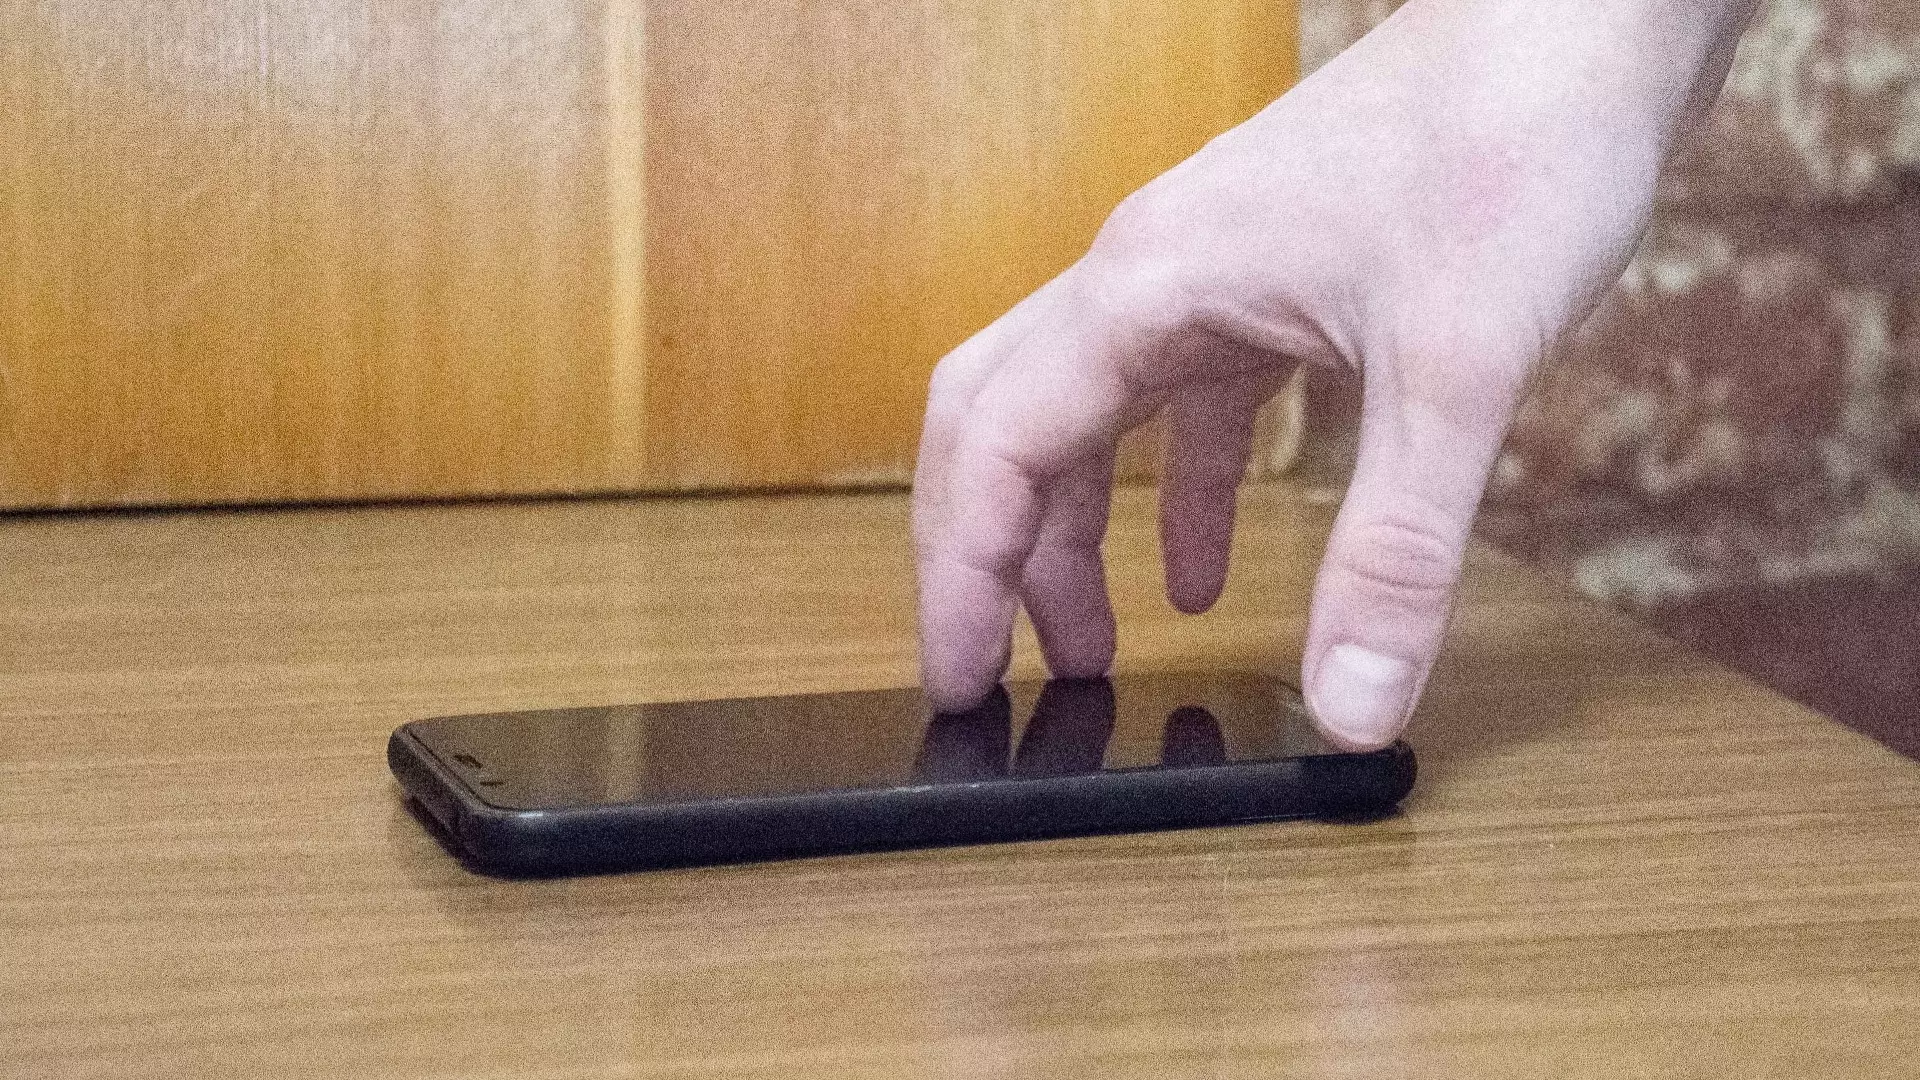 ДНС выплатит жителю Первоуральска более 160 тысяч рублей за сломанный смартфон